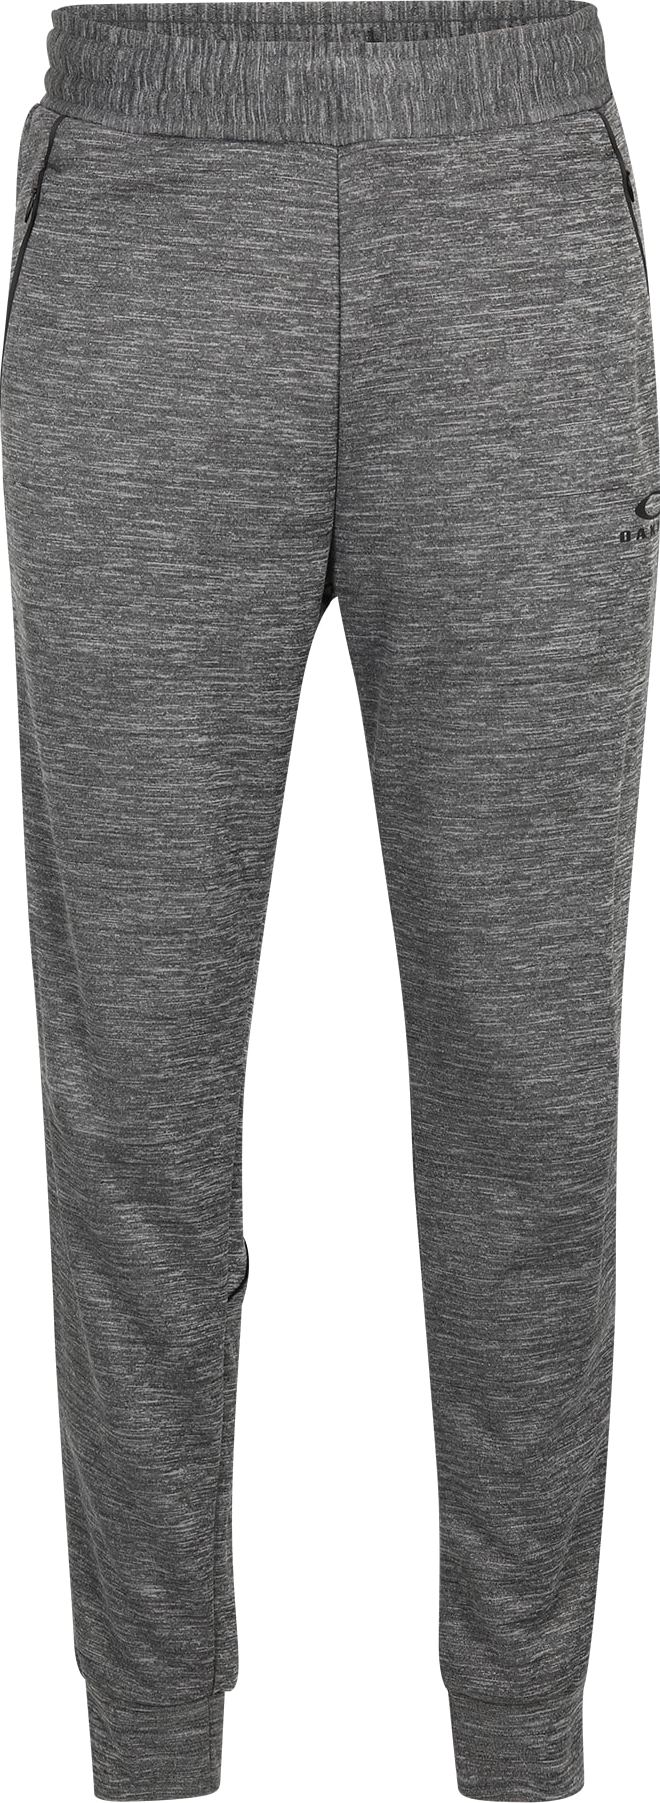 Sportovní kalhoty 'ERGO HEATHERED' Oakley šedý melír / černá